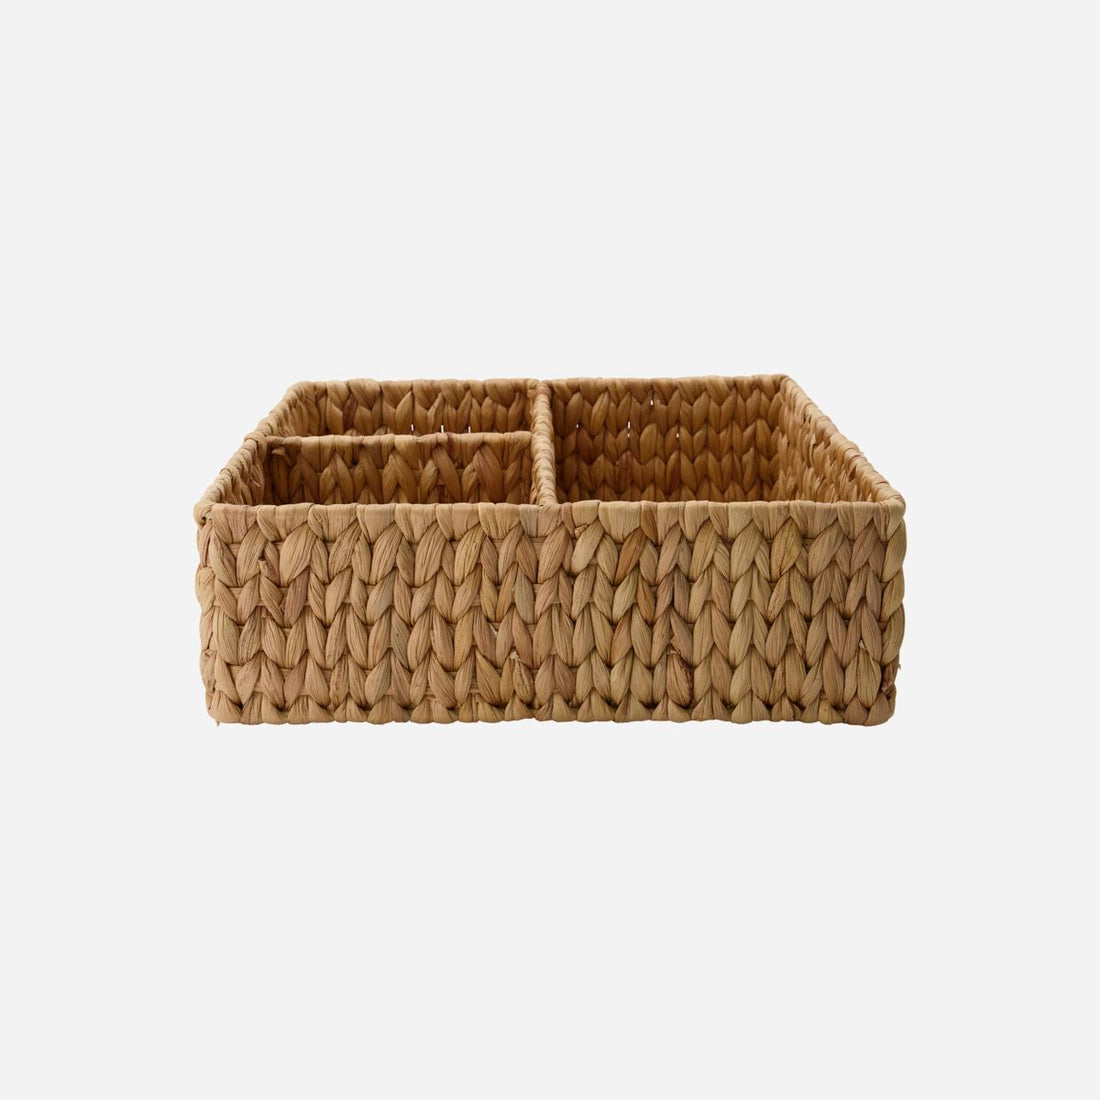 Basket/storage